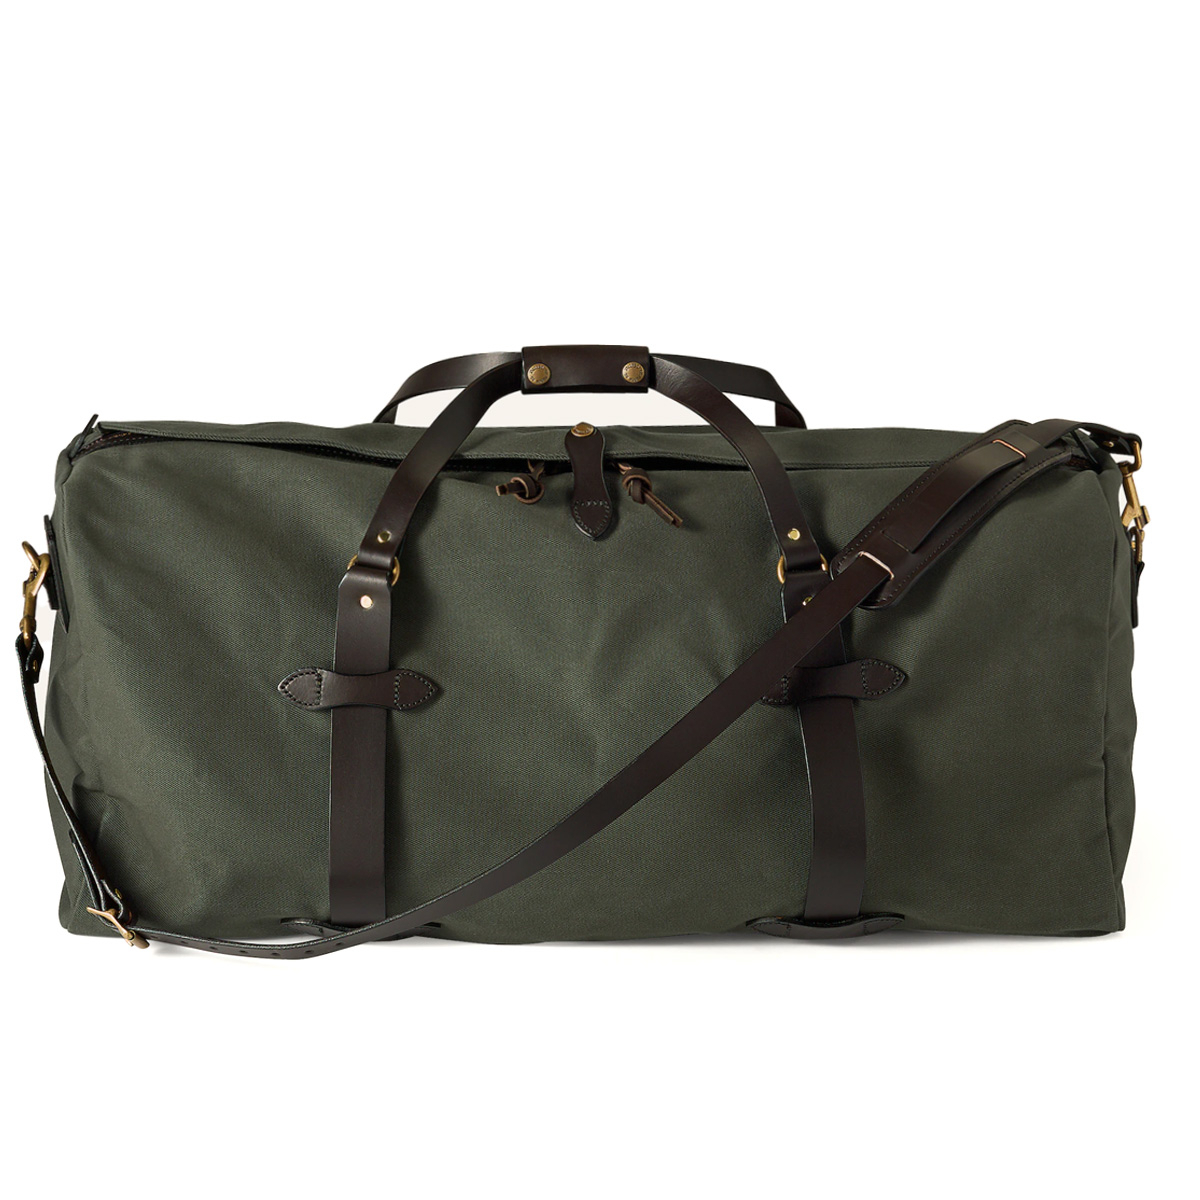 Carry-on Garment Bag Large Duffel Bag Suit Travel Bag Weekend Bag Flig–  backpacks4less.com